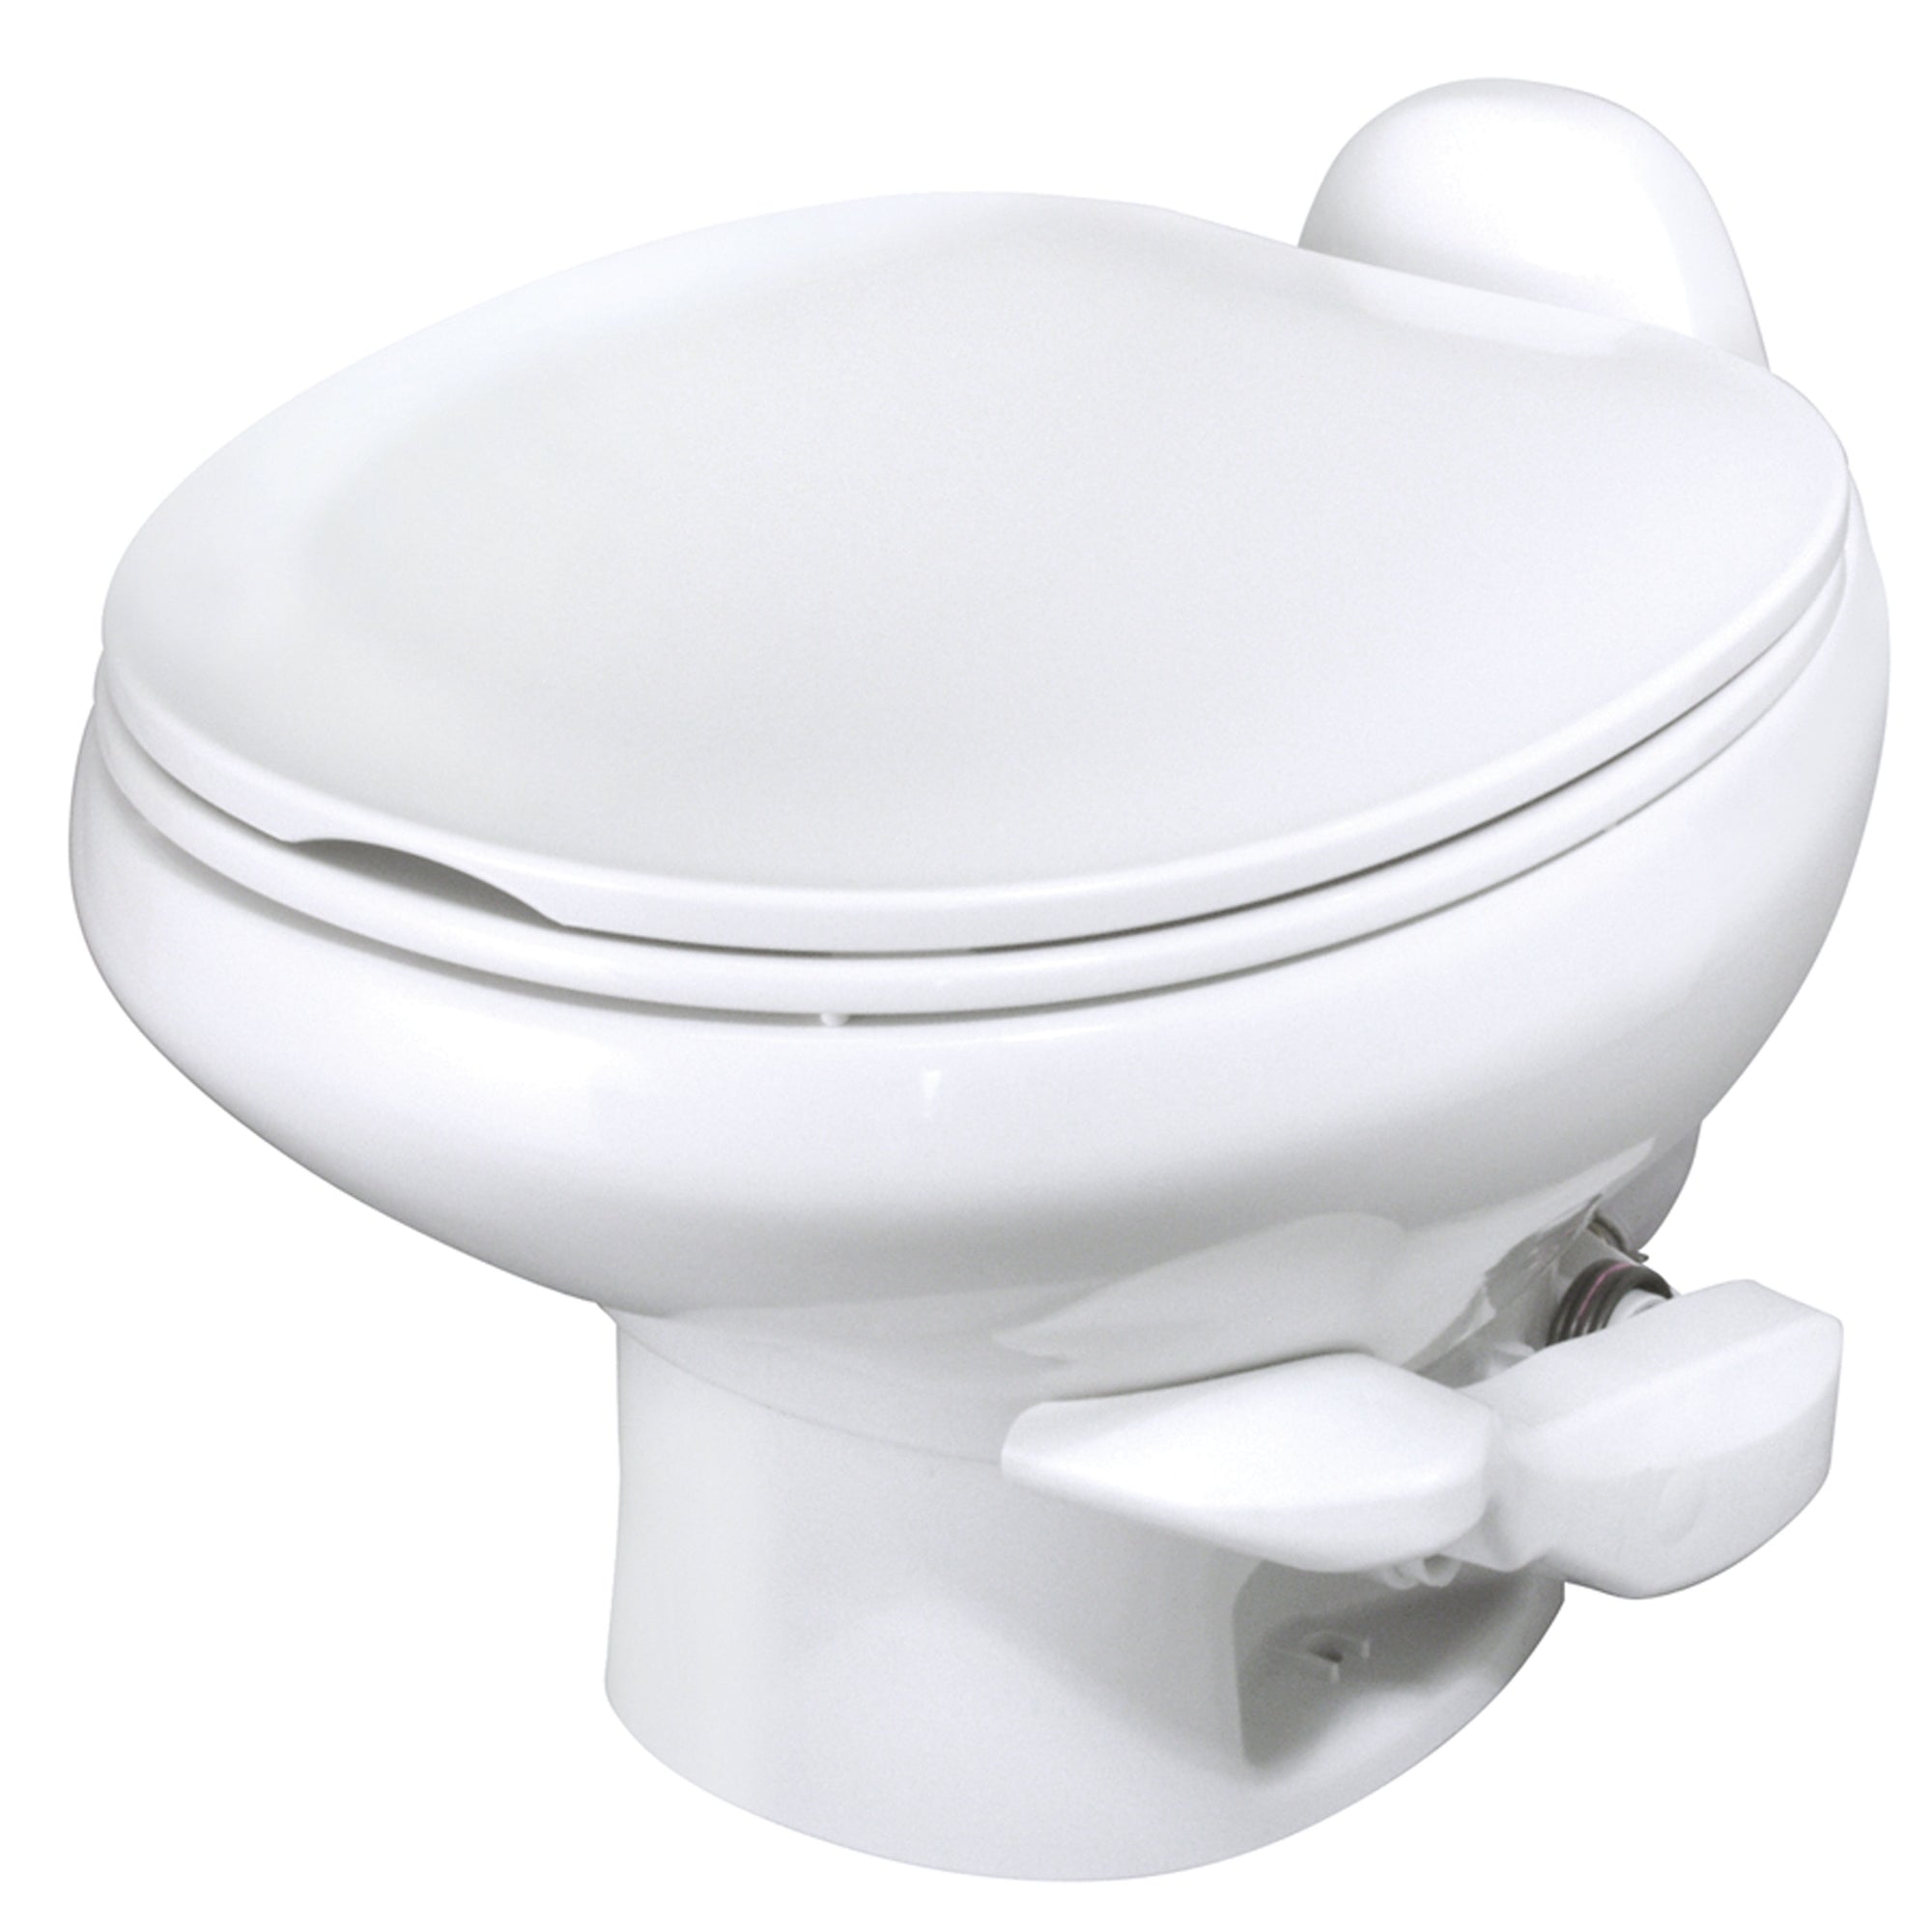 Thetford 42061 Aqua-Magic Style II Toilet with Water Saver - Low, White